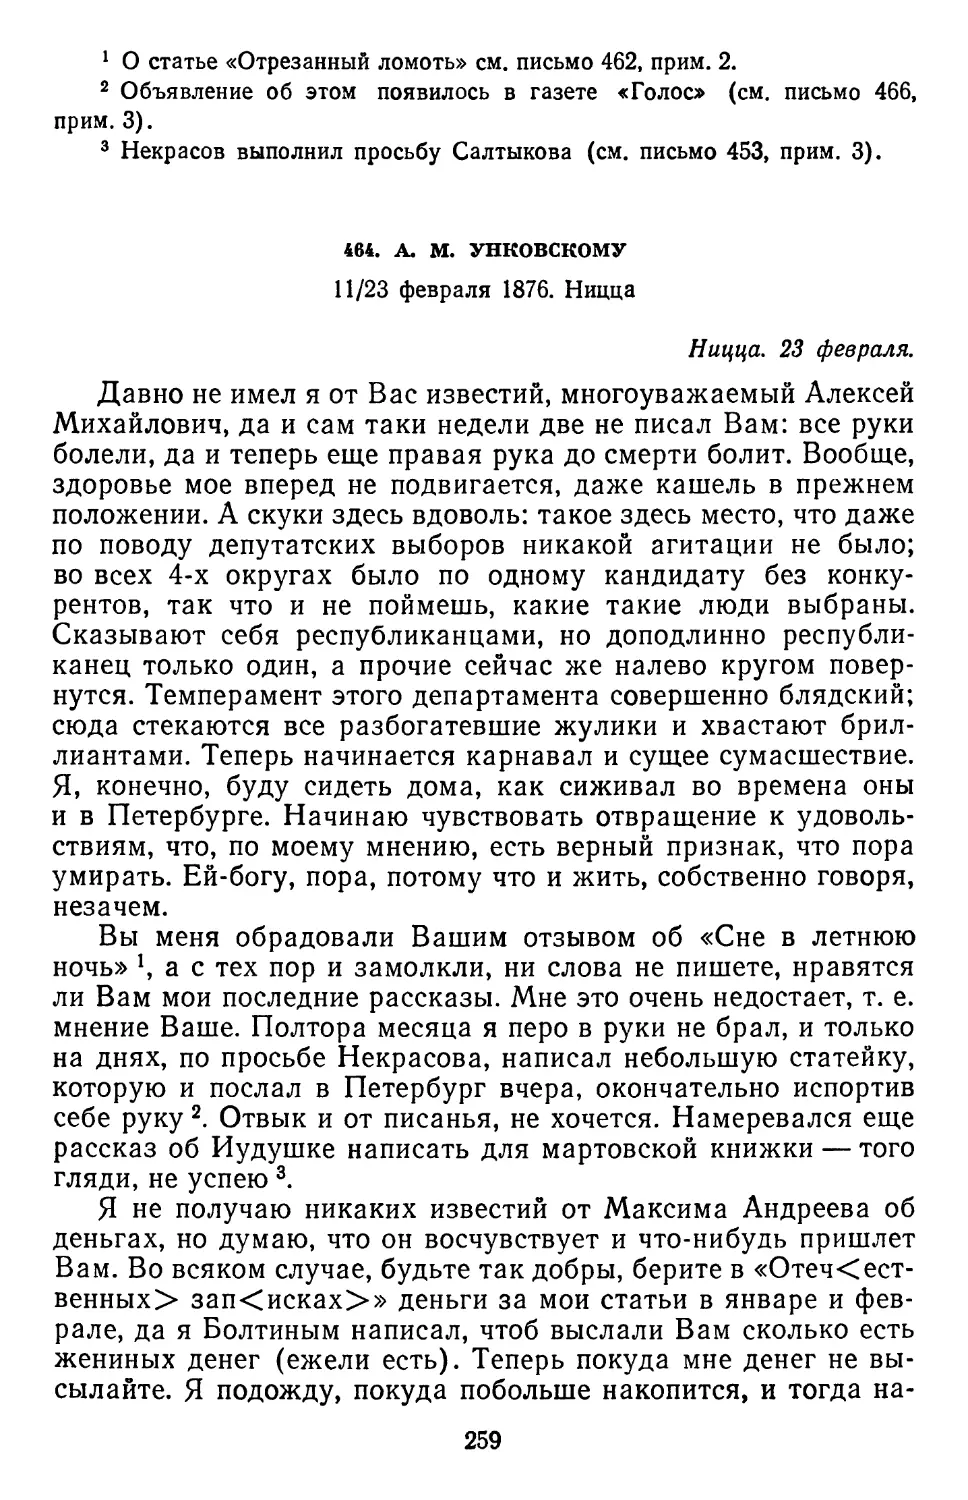 464.А.М.Унковскому. 11/23 февраля 1876. Ницца..